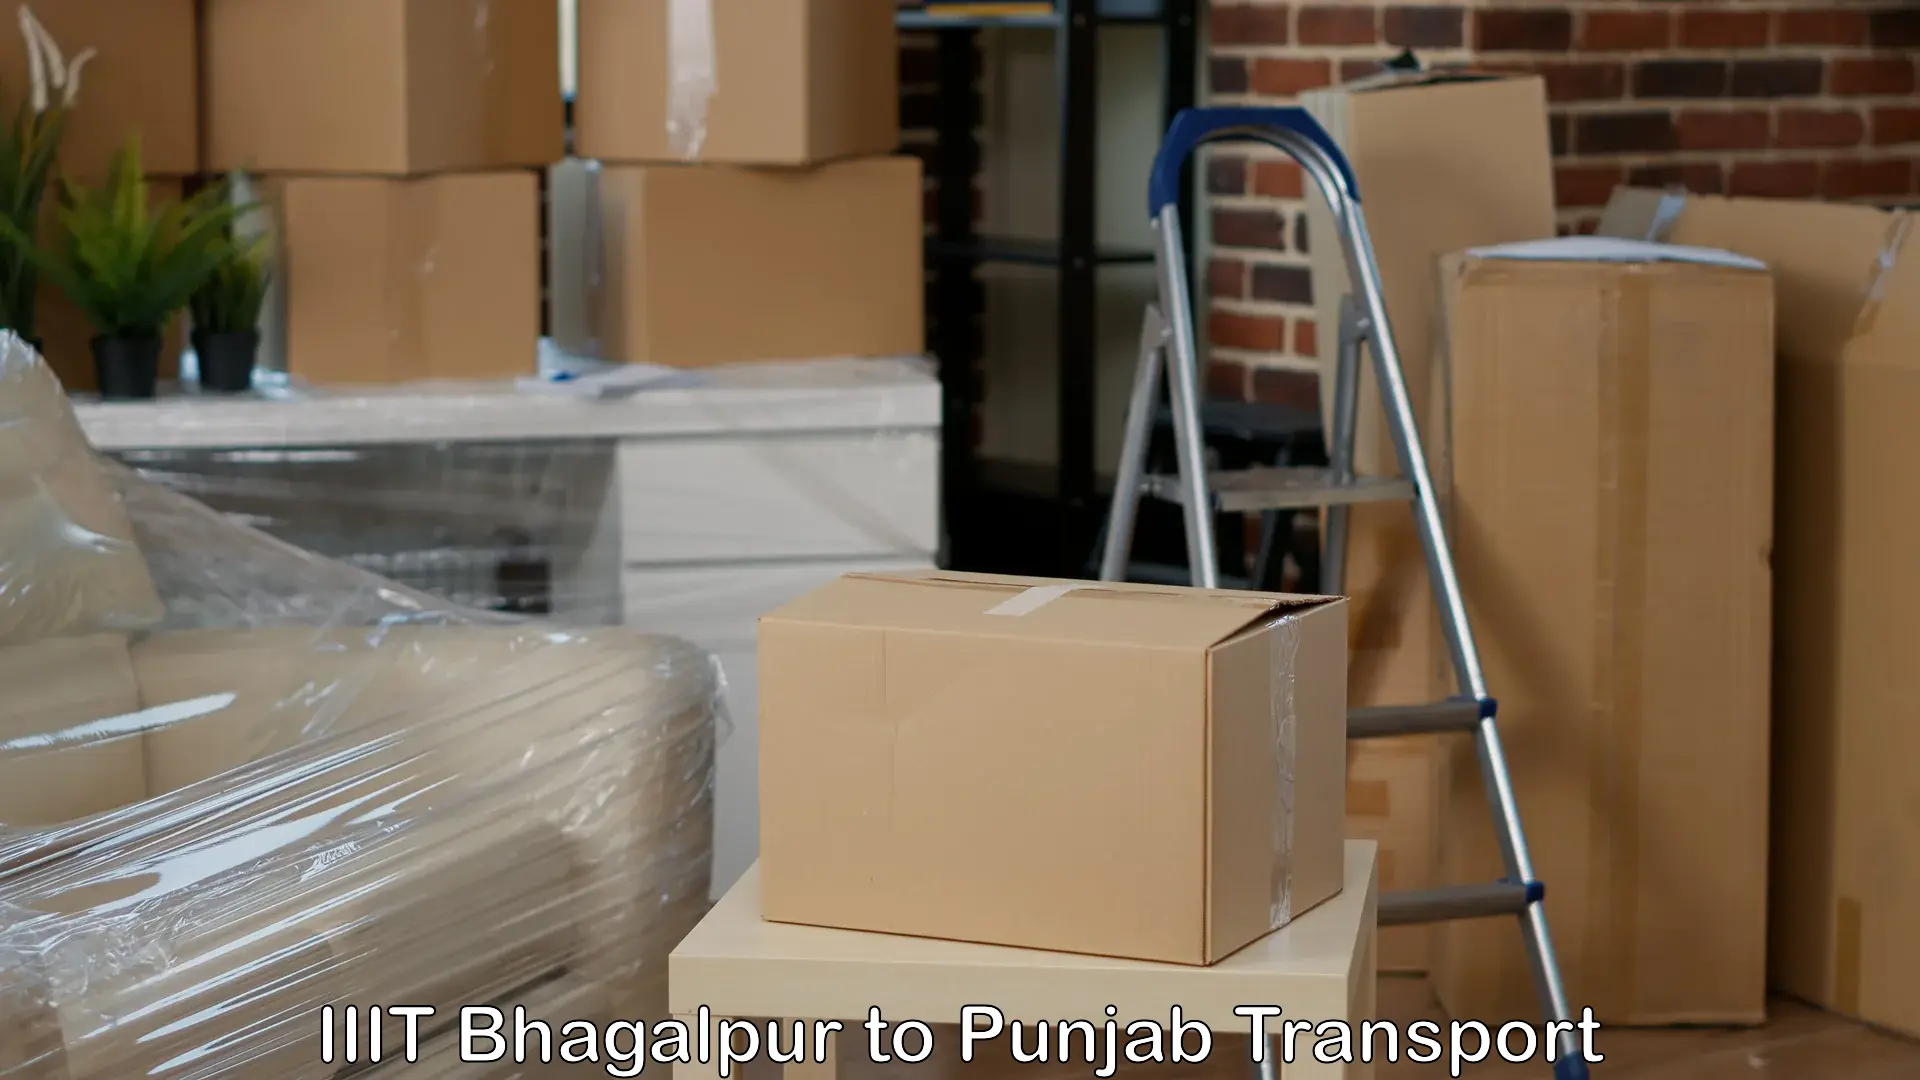 Furniture transport service IIIT Bhagalpur to Garhshankar